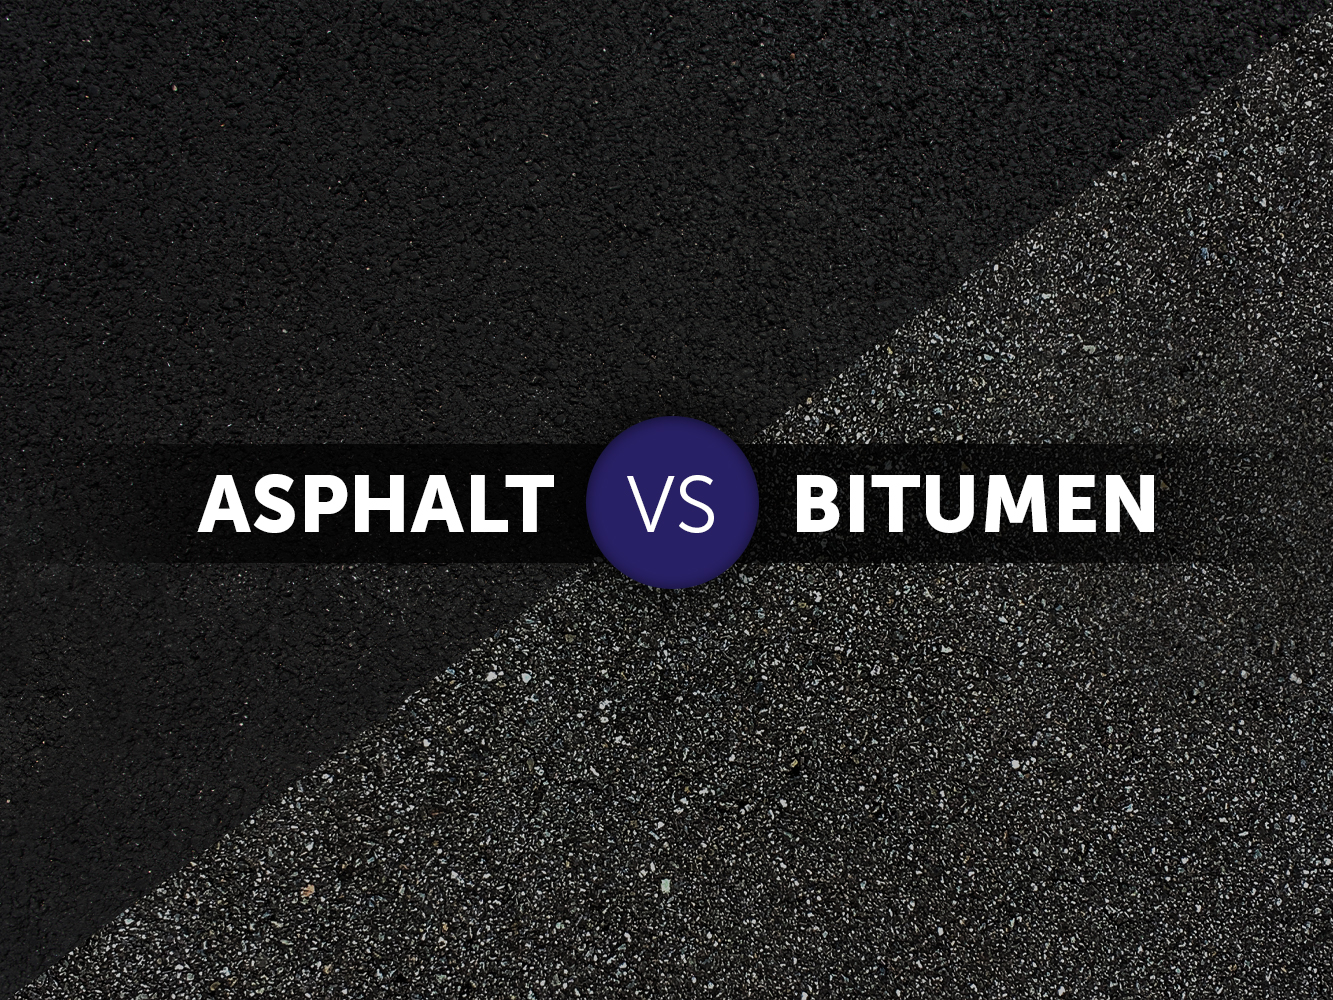 Asphalt vs. Bitumen